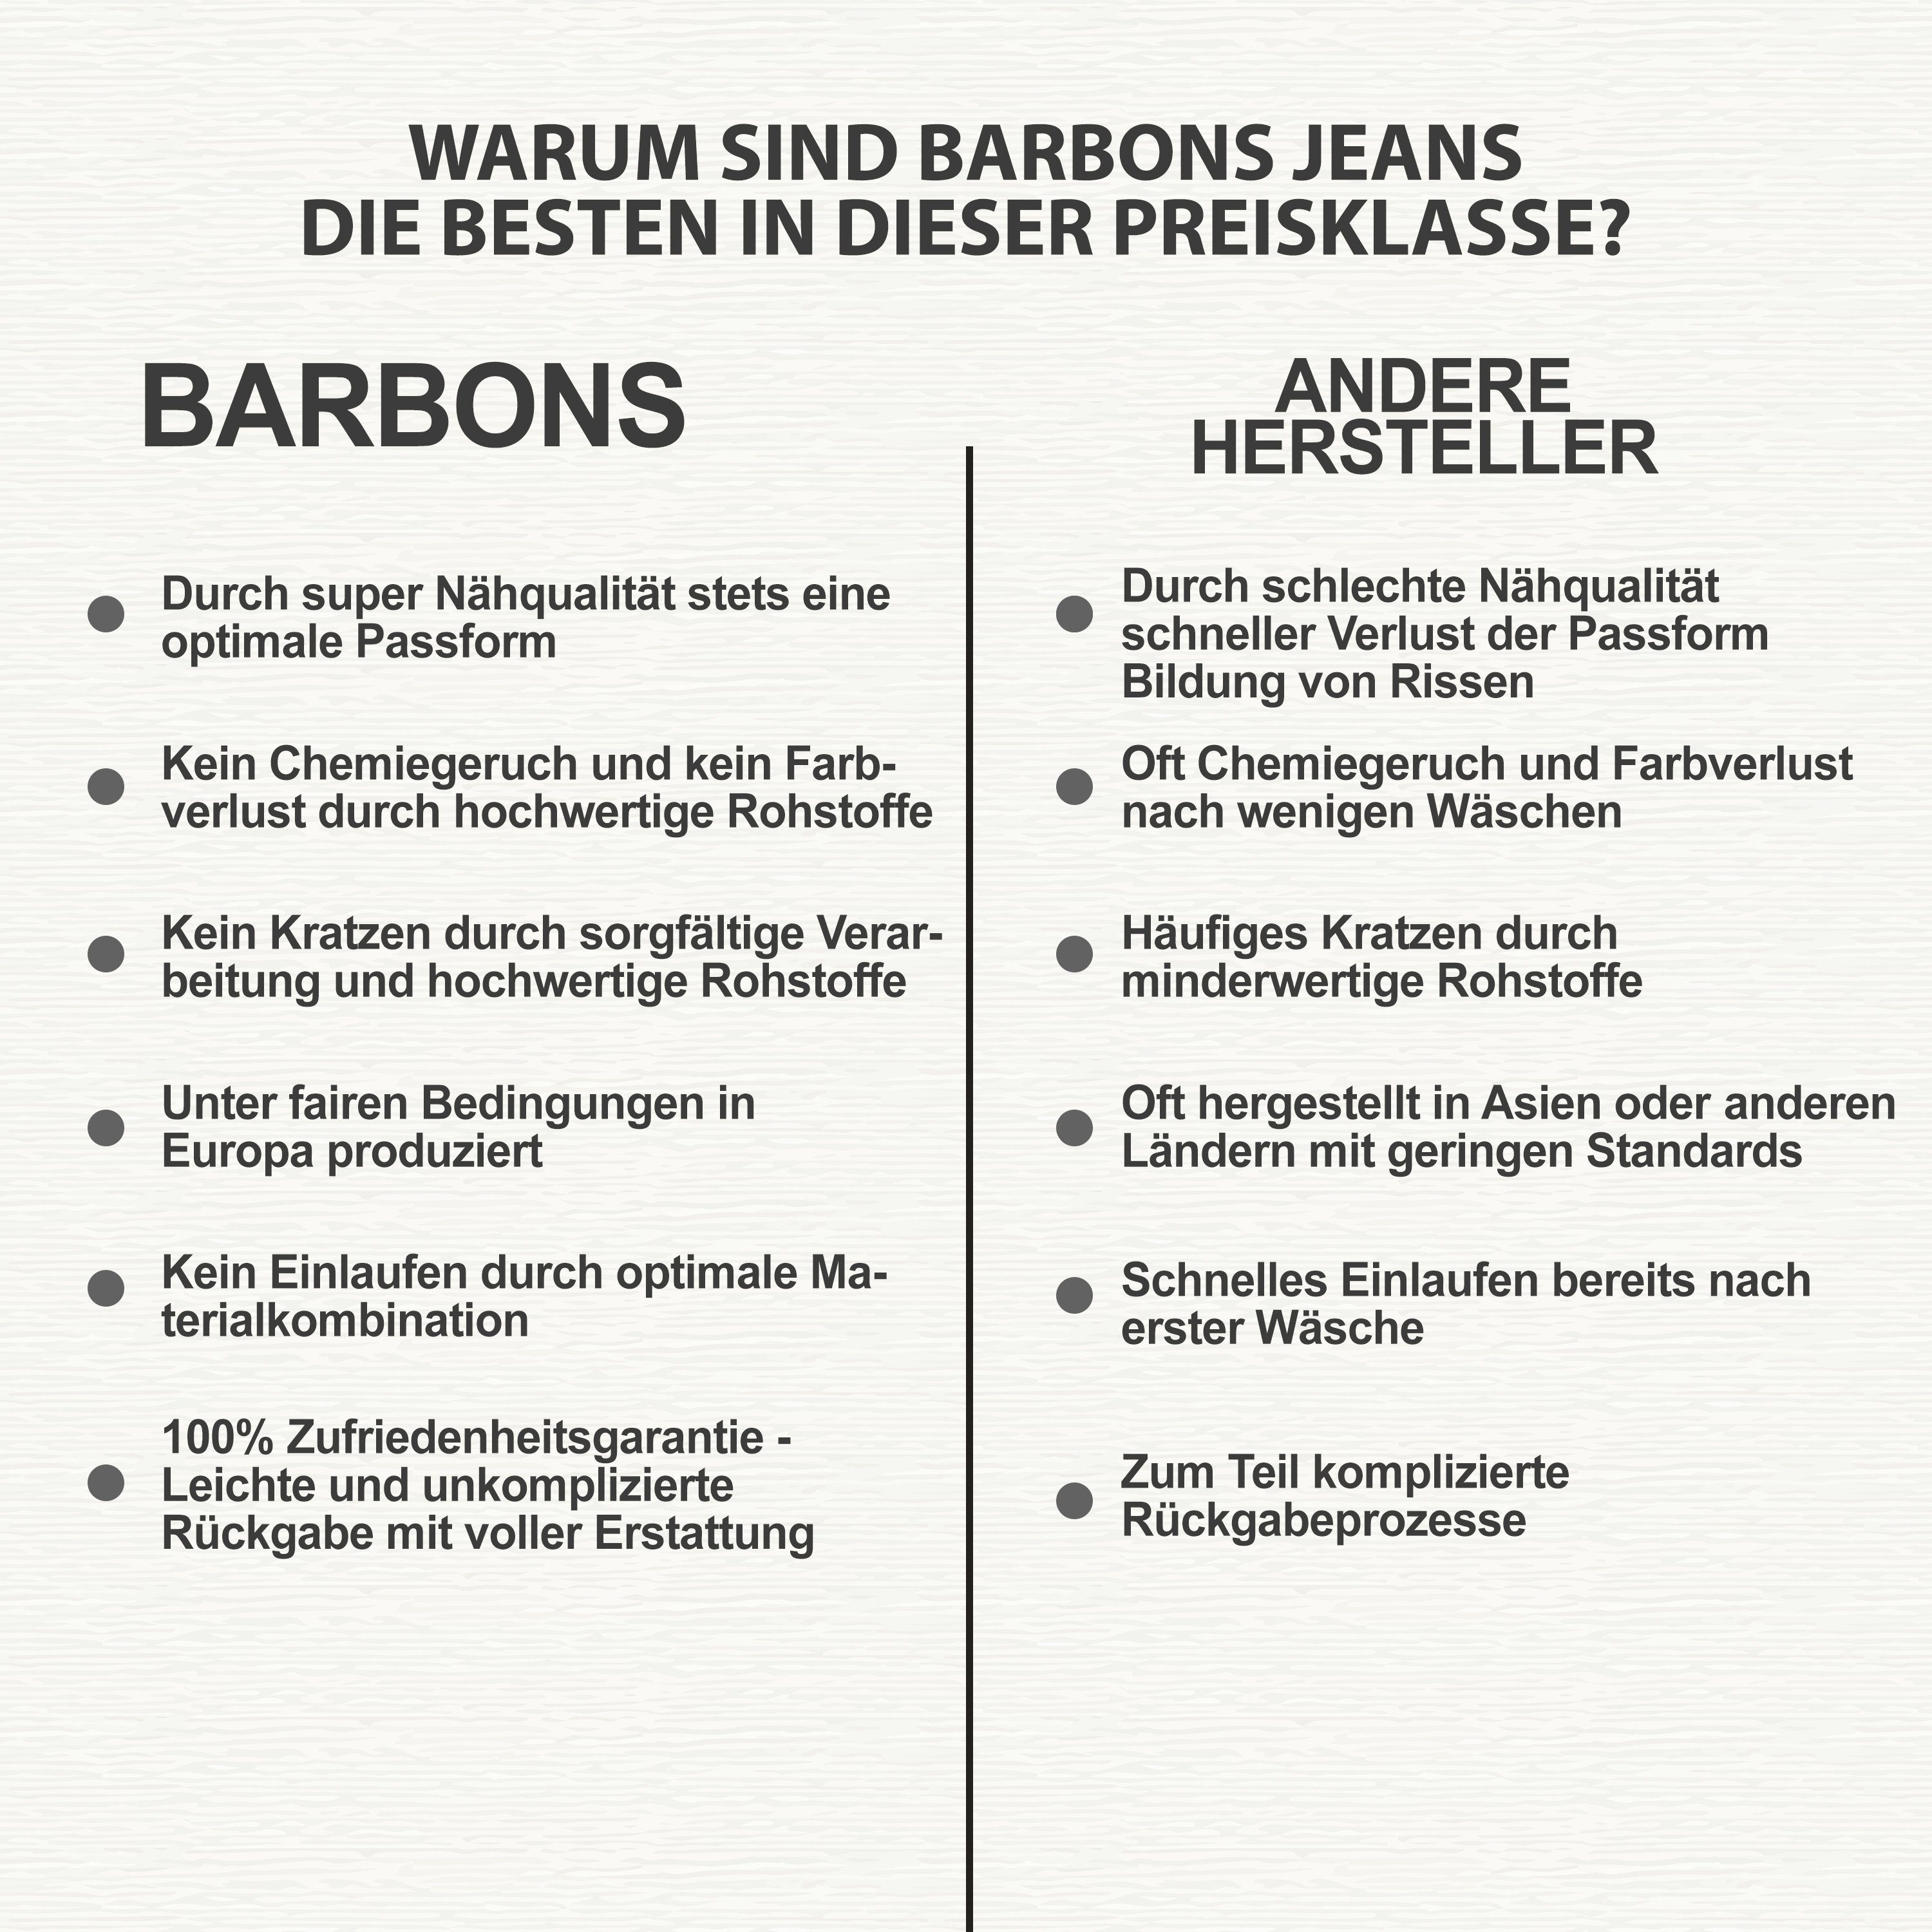 BARBONS 5-Pocket-Jeans Herren Regular 03-Schwarz Design Fit 5-Pocket